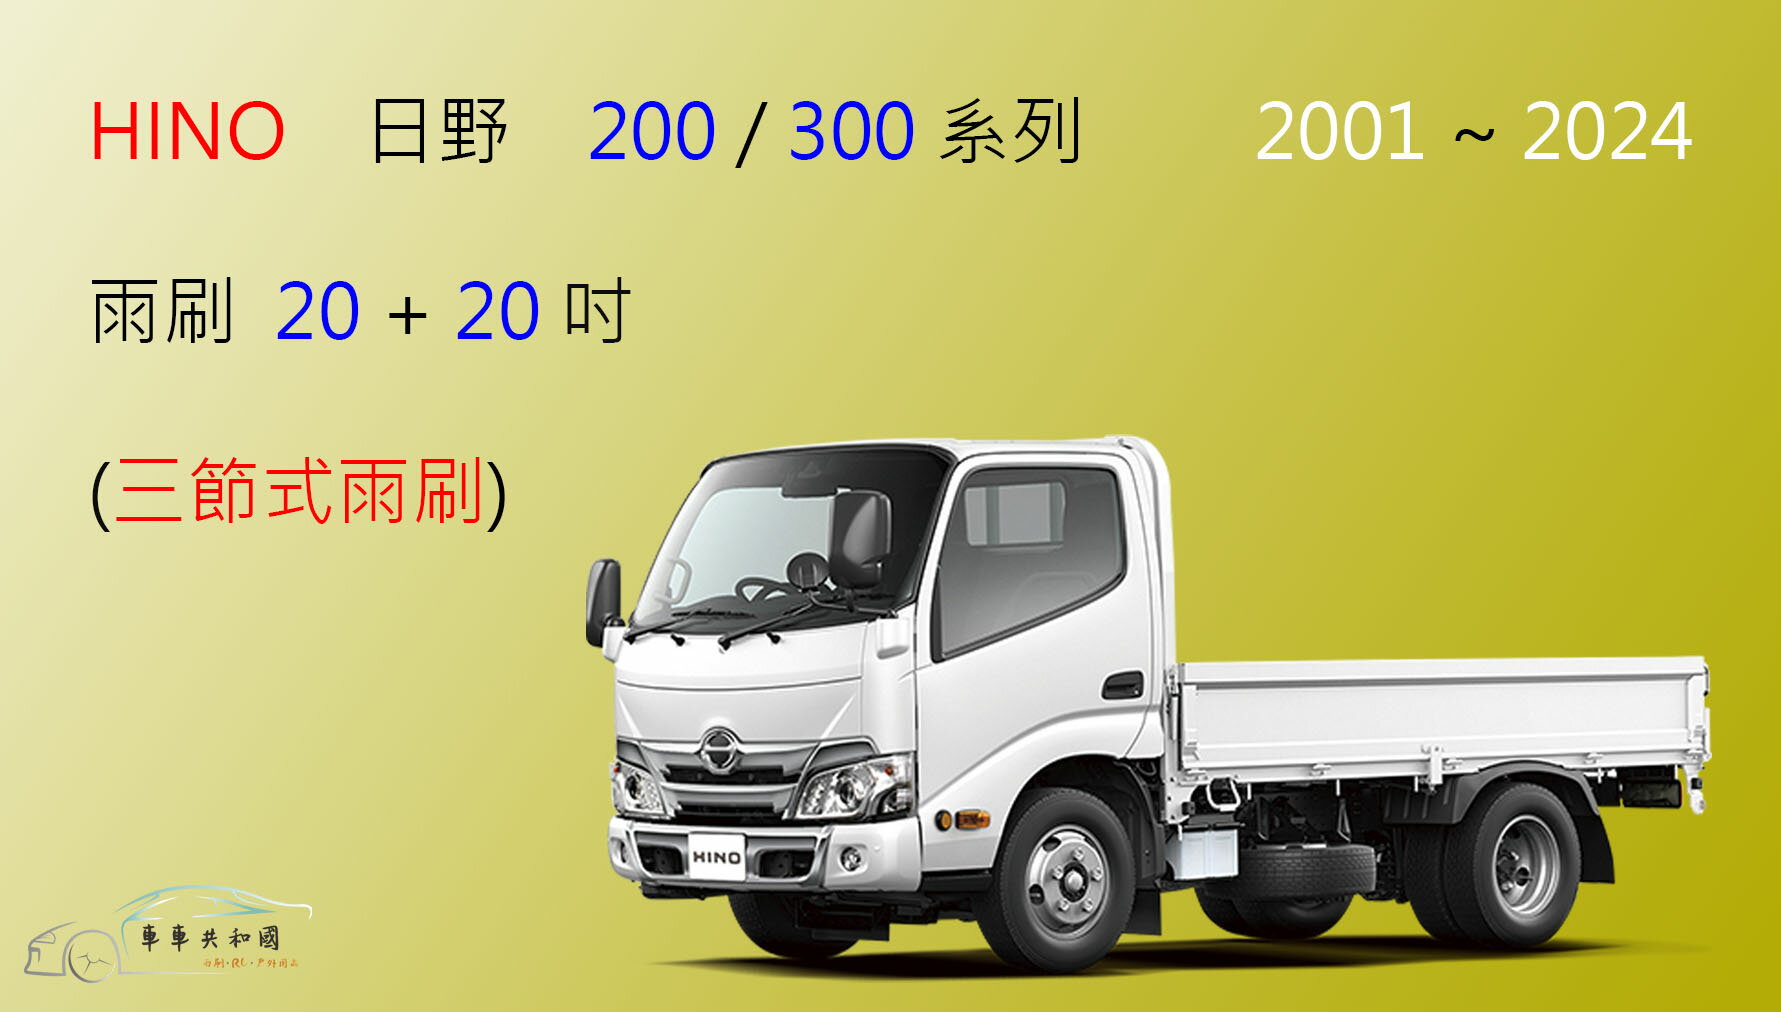 【車車共和國】HINO 日野 300 / 200 系列 三節式雨刷 貨車 商用車 卡車 前雨刷 雨刷錠